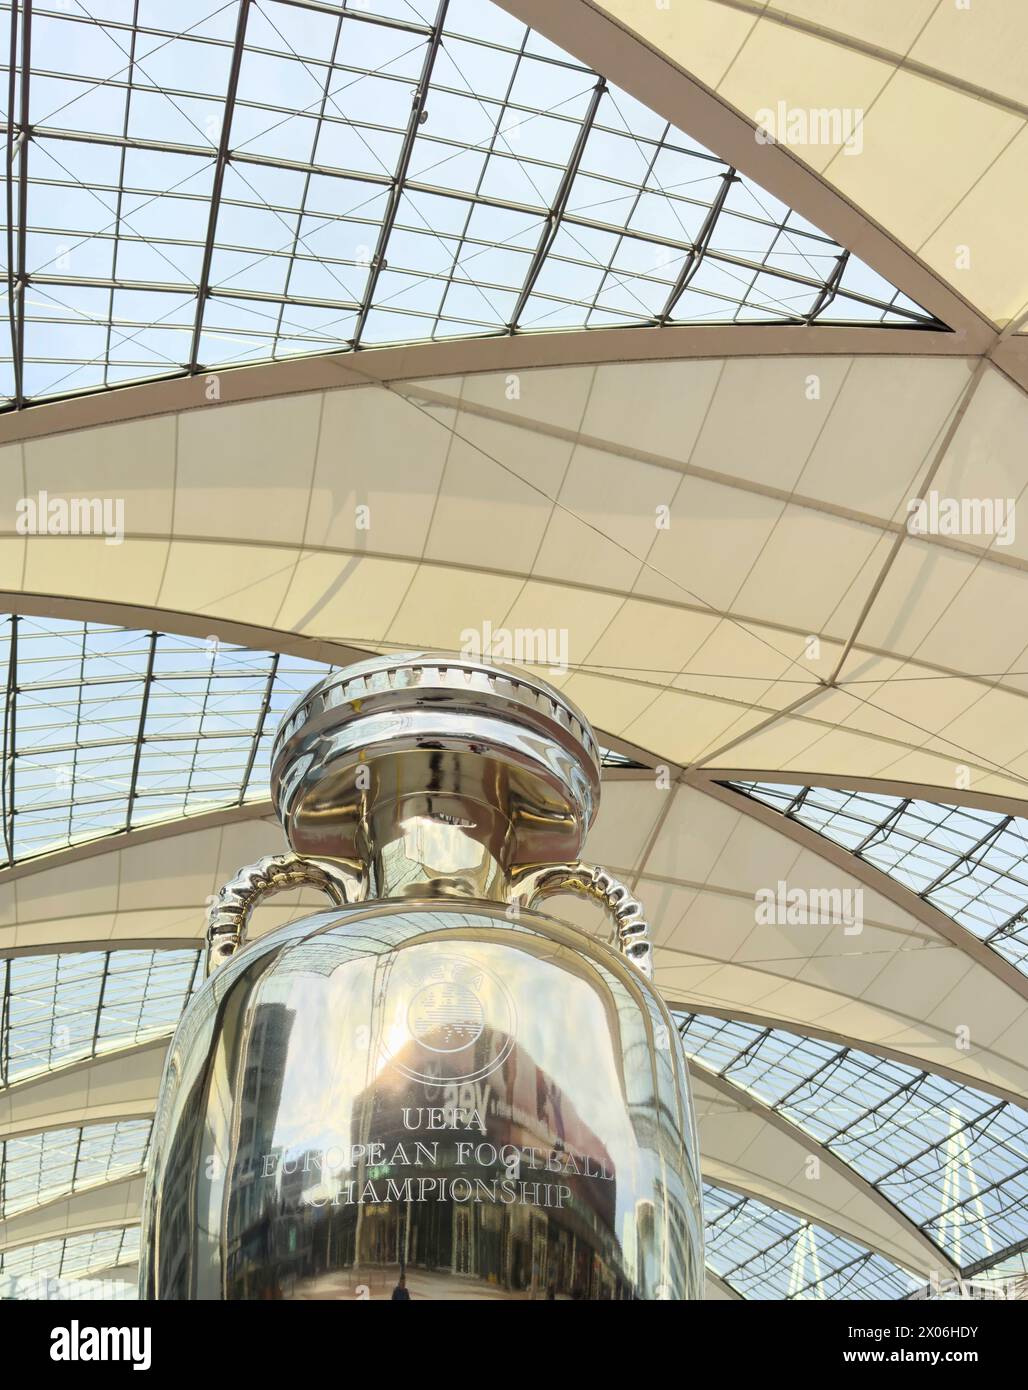 Trophée des Championnats d'Europe de football de l'UEFA à l'aéroport Franz-Joseph-Strauss le 23 mars 2024 à Munich, Hallbergmoos, Allemagne. Banque D'Images